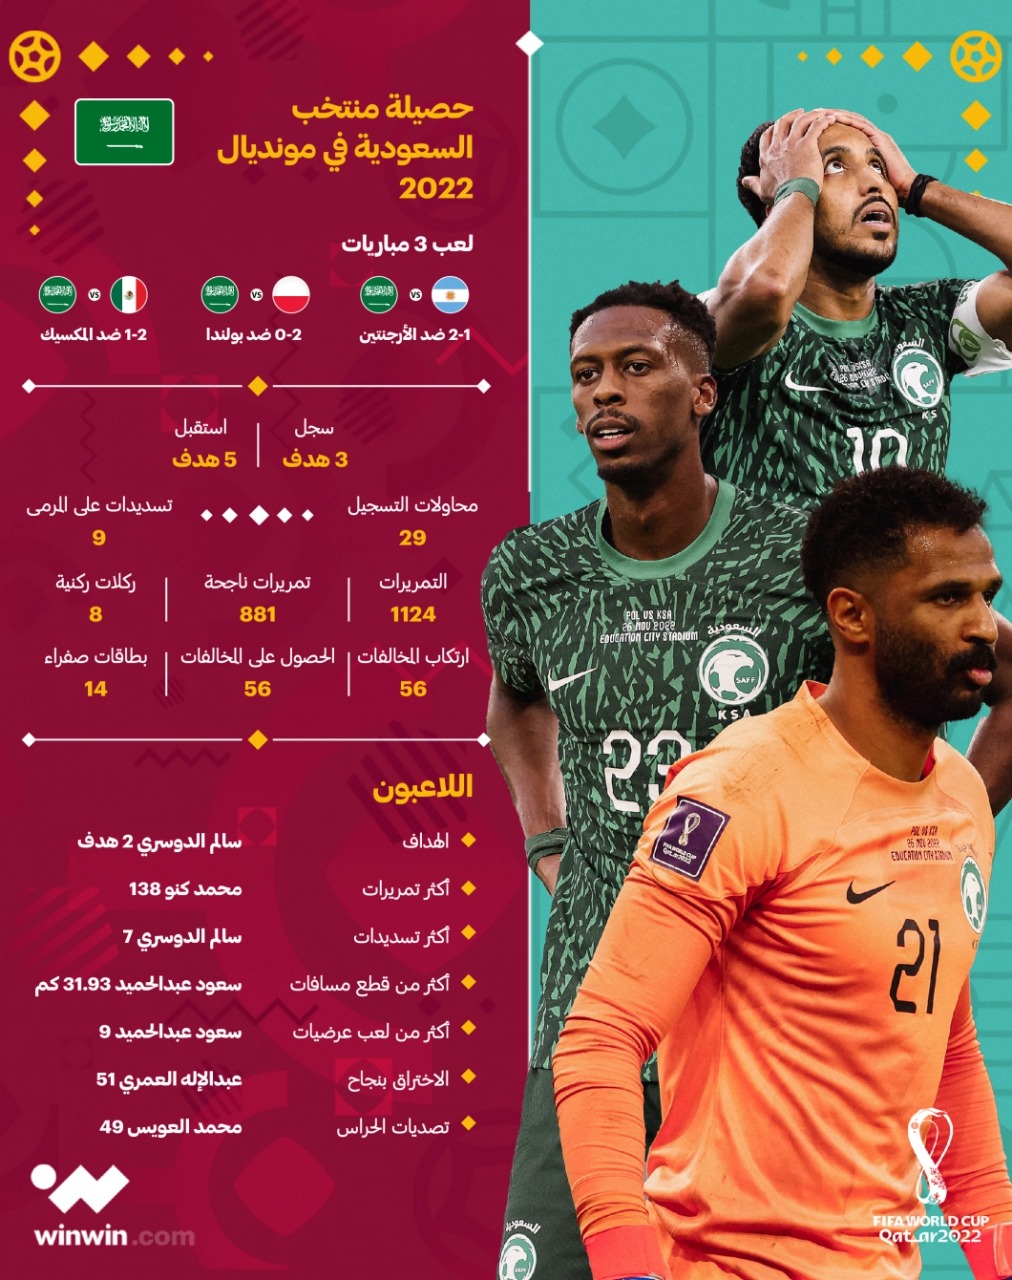 السعودية كأس العالم قطر 2022 ون ون winwin